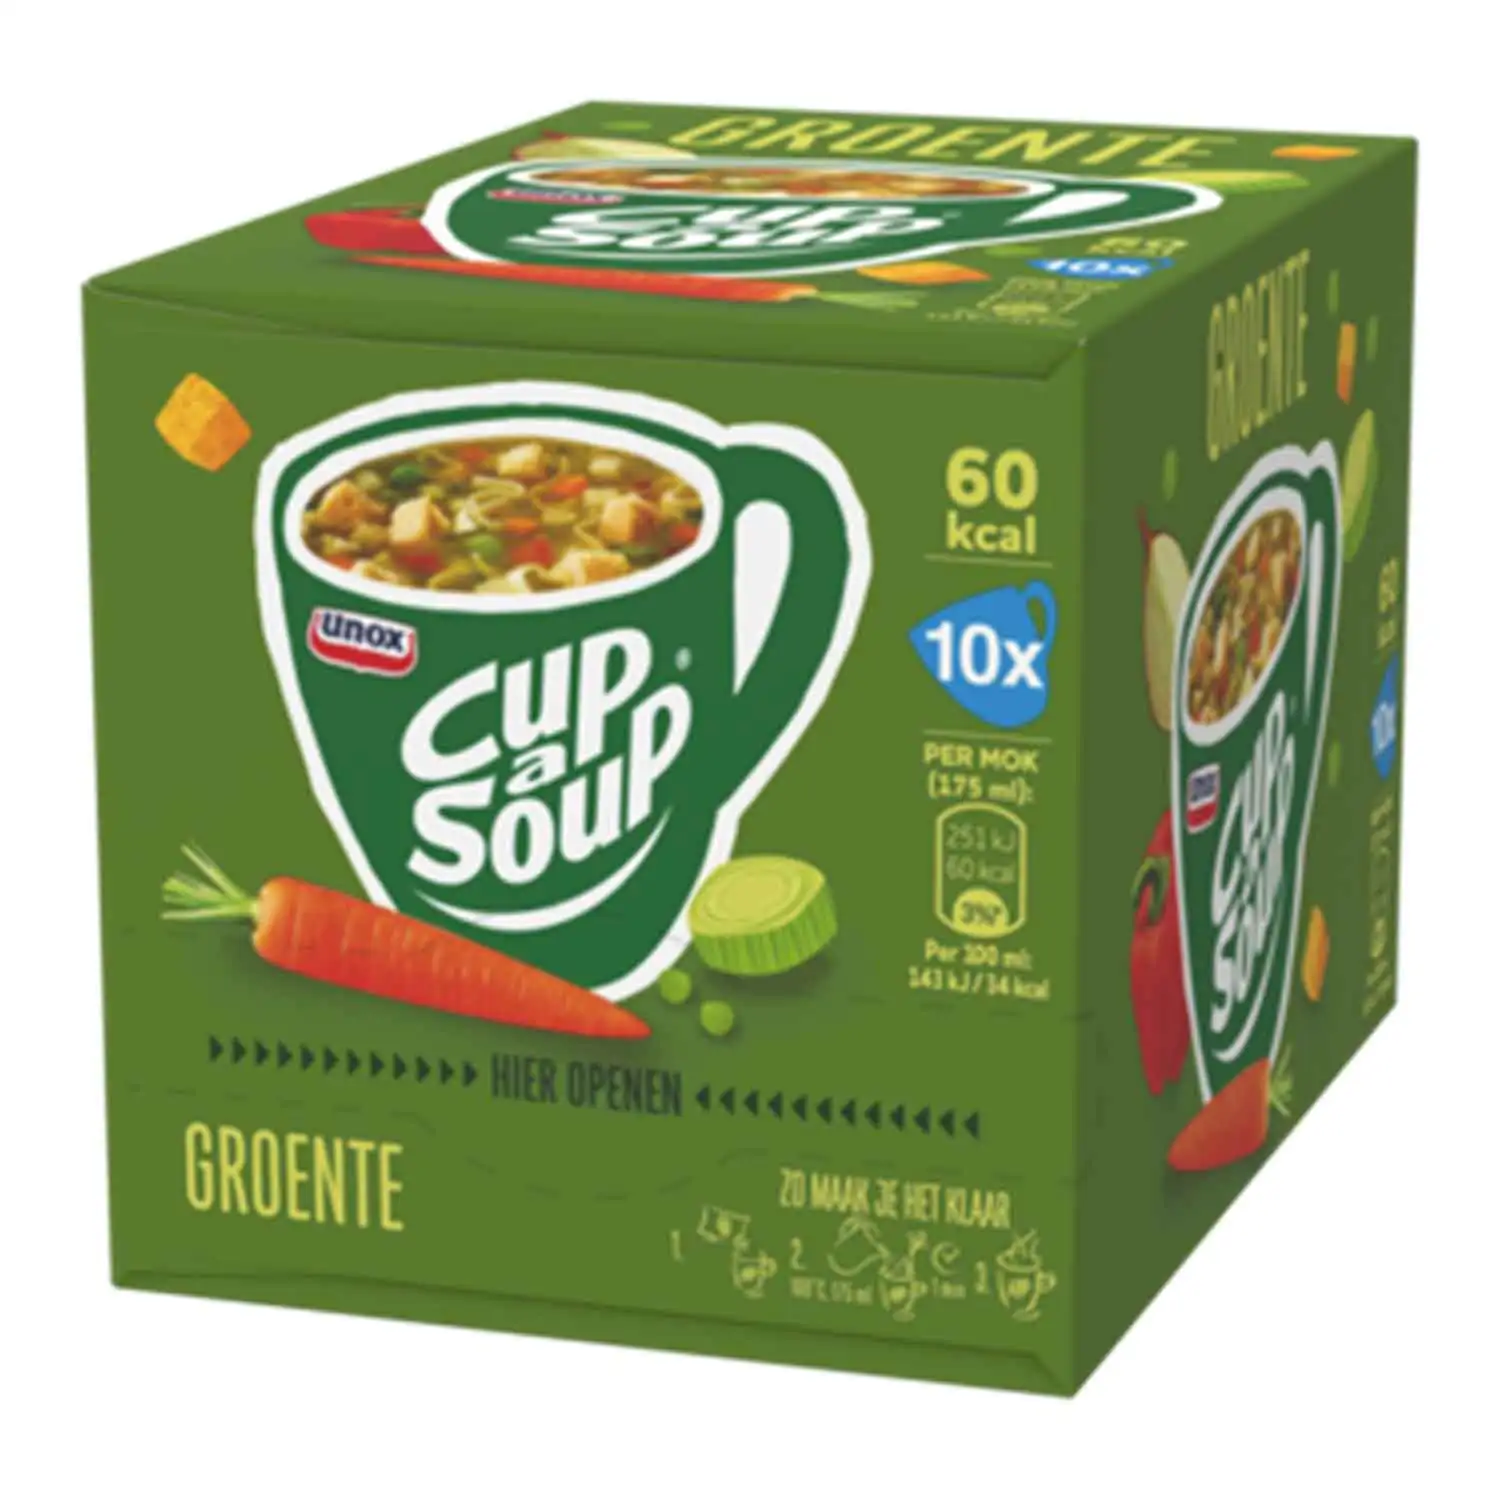 10x Cup a Soup legume 16g